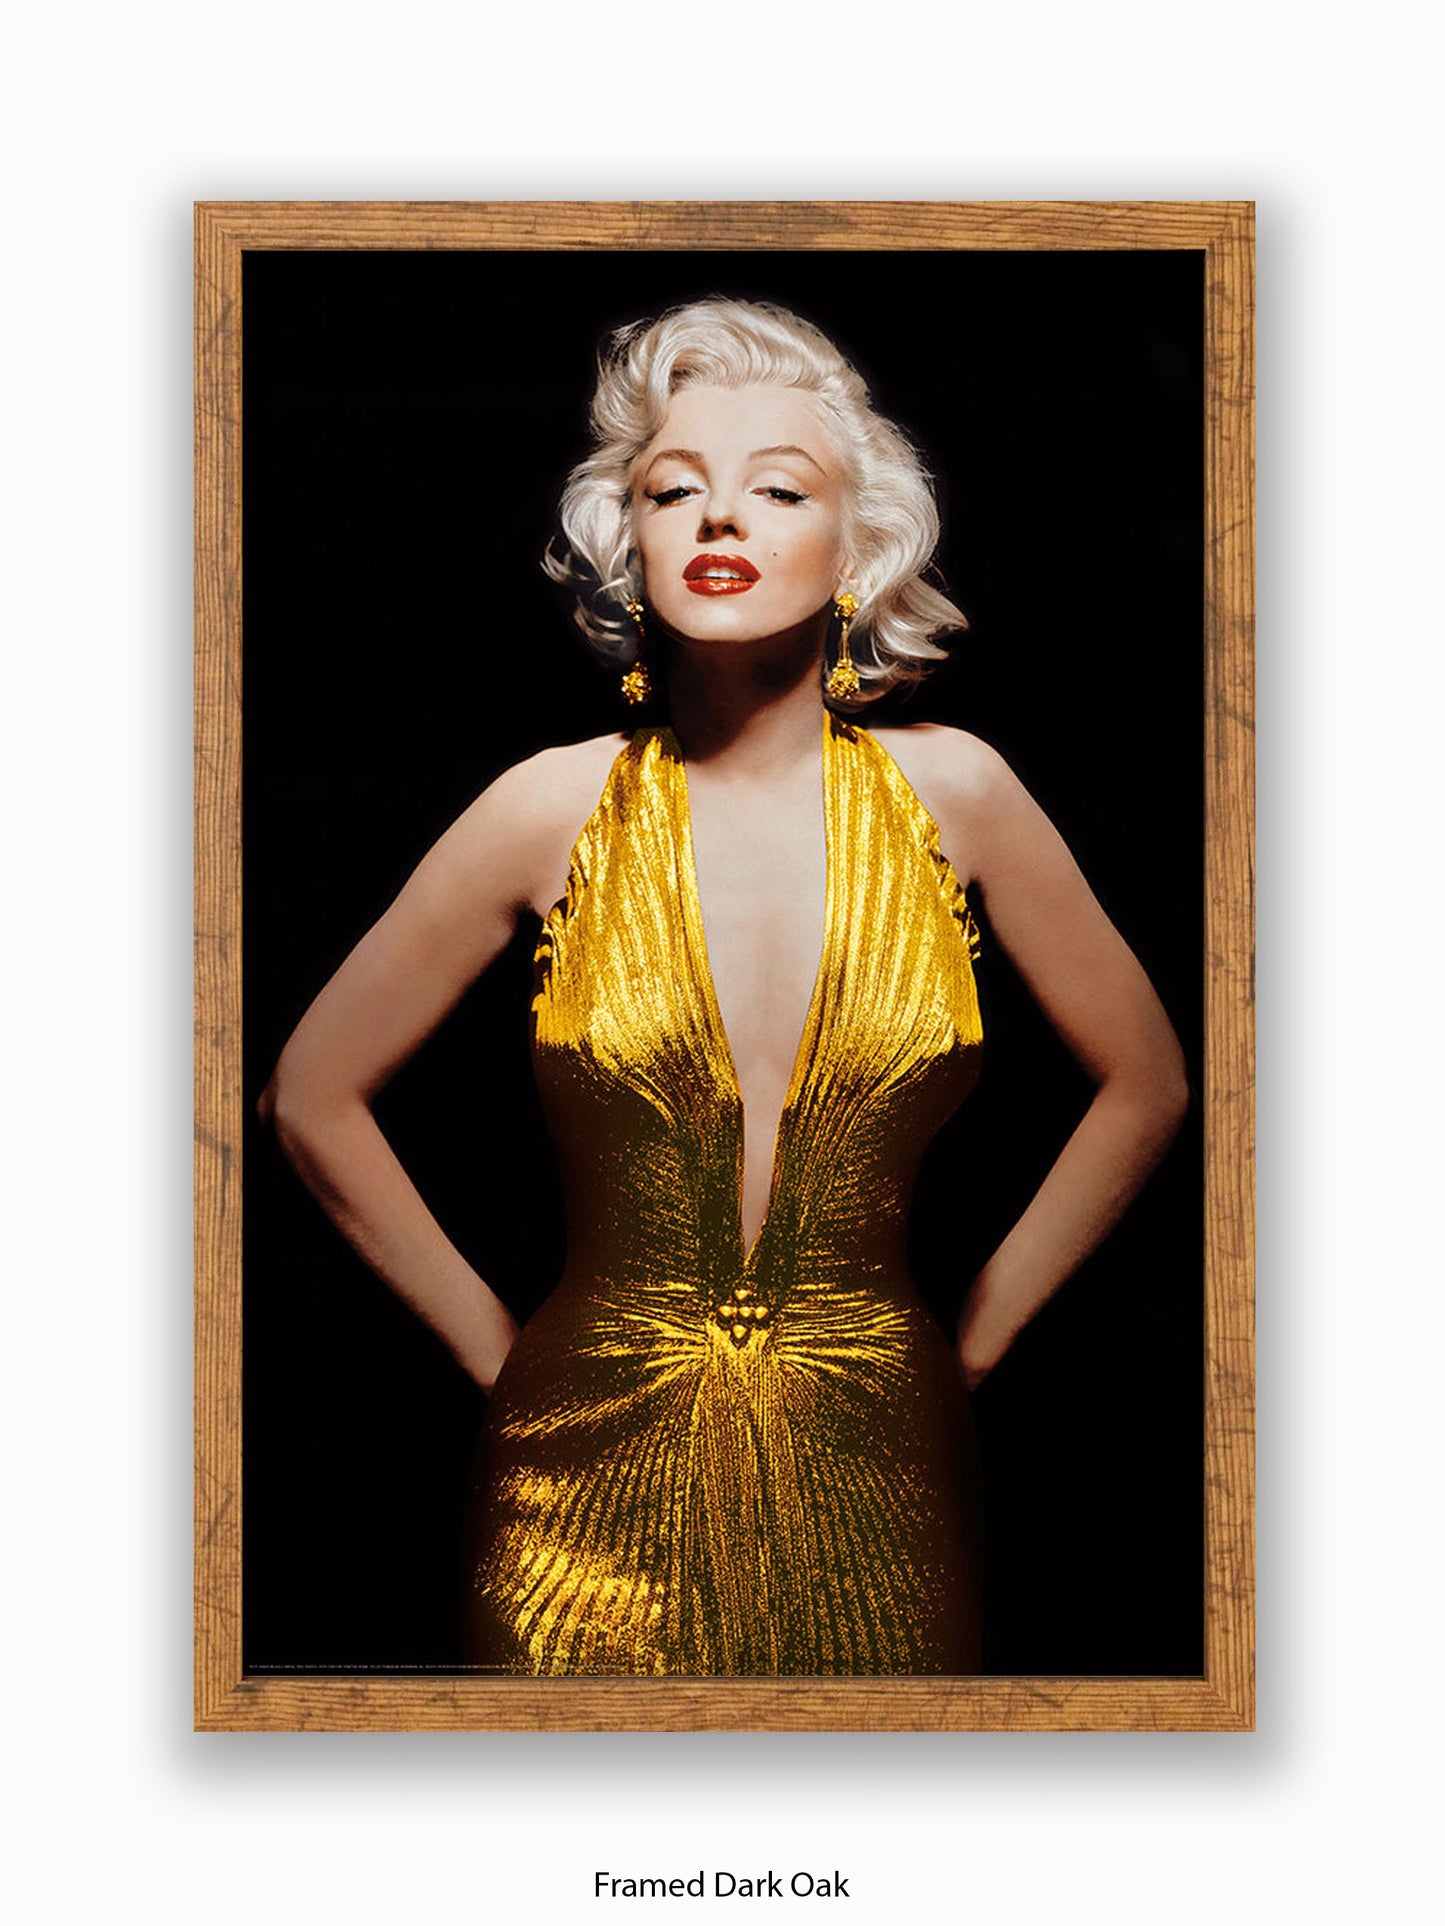 Marilyn Monroe Gold Dress Poster